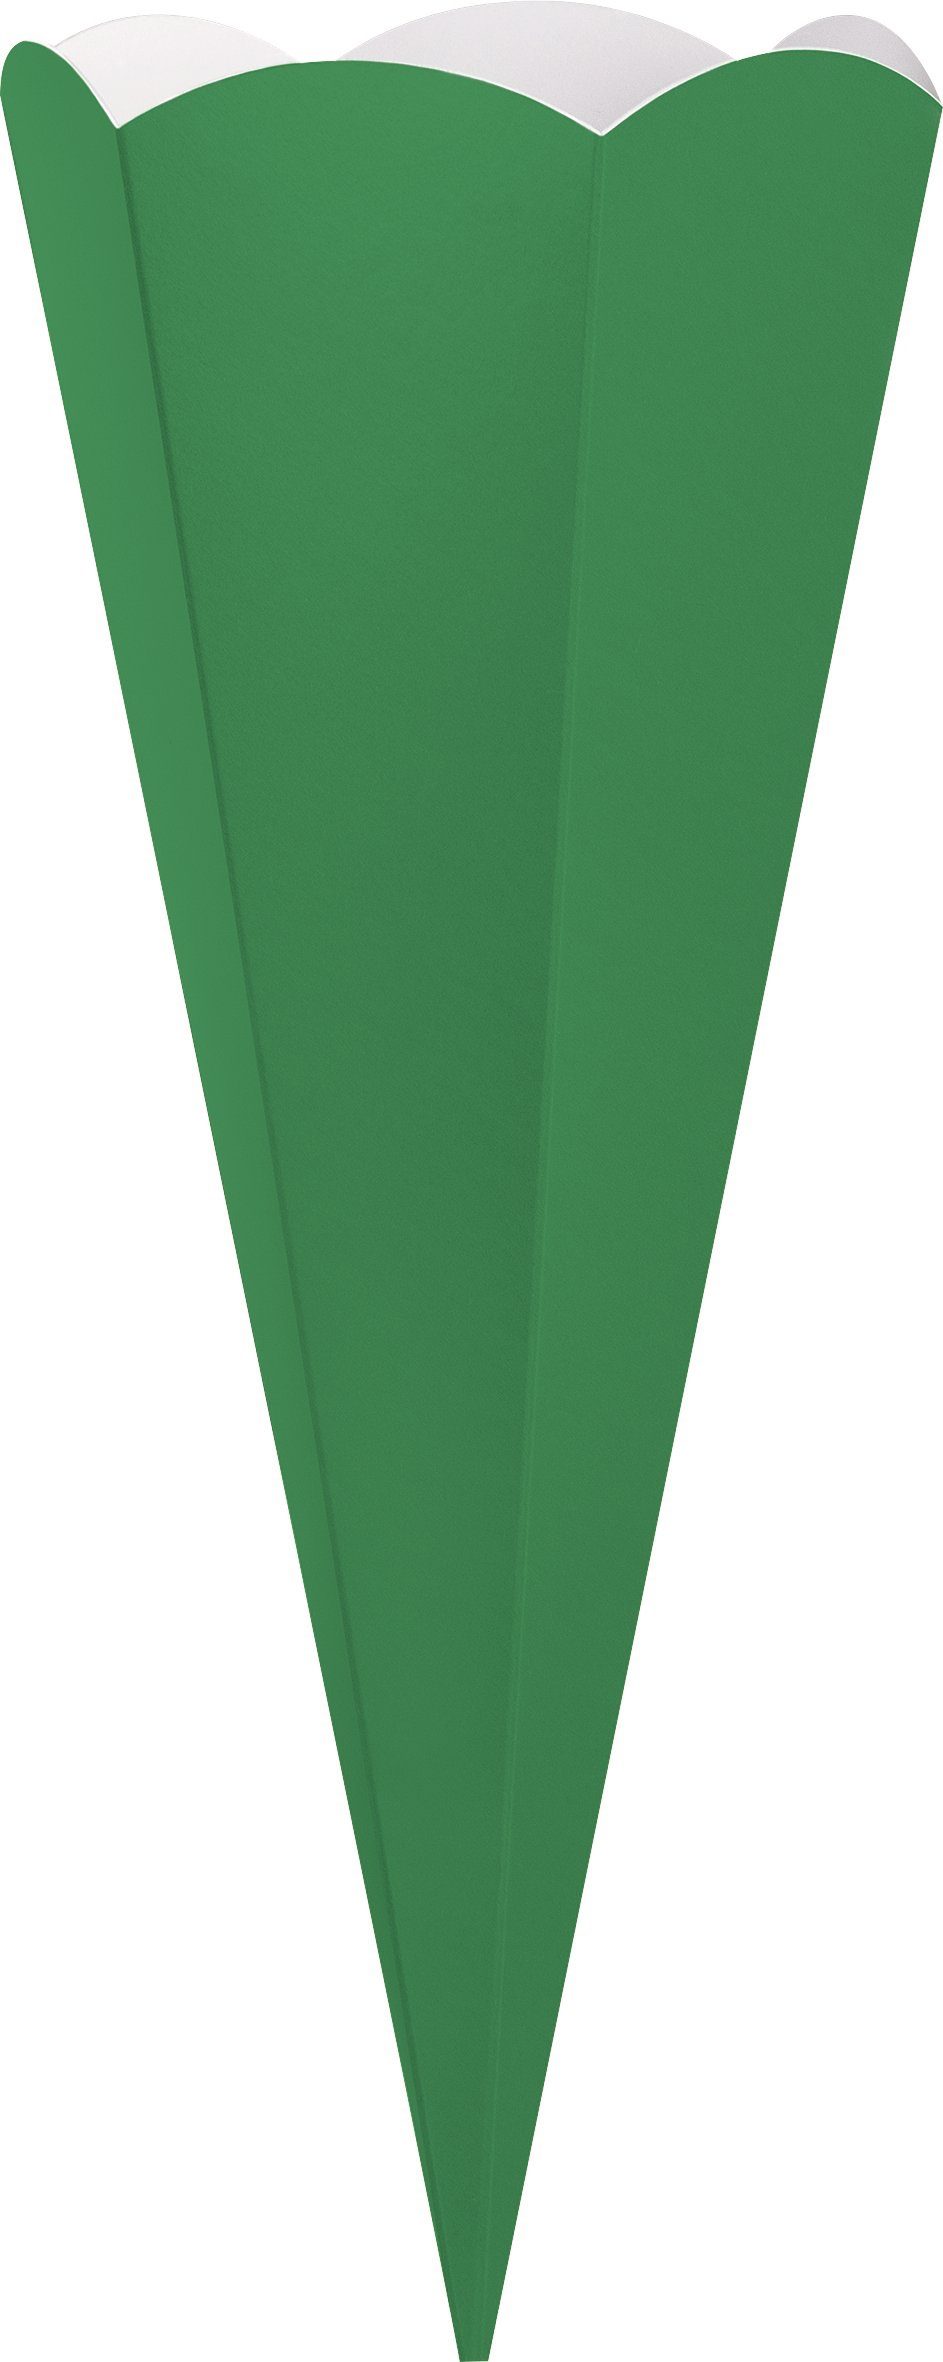 Heyda Schultüte 69 Schultüten-Zuschnitt, Grün cm